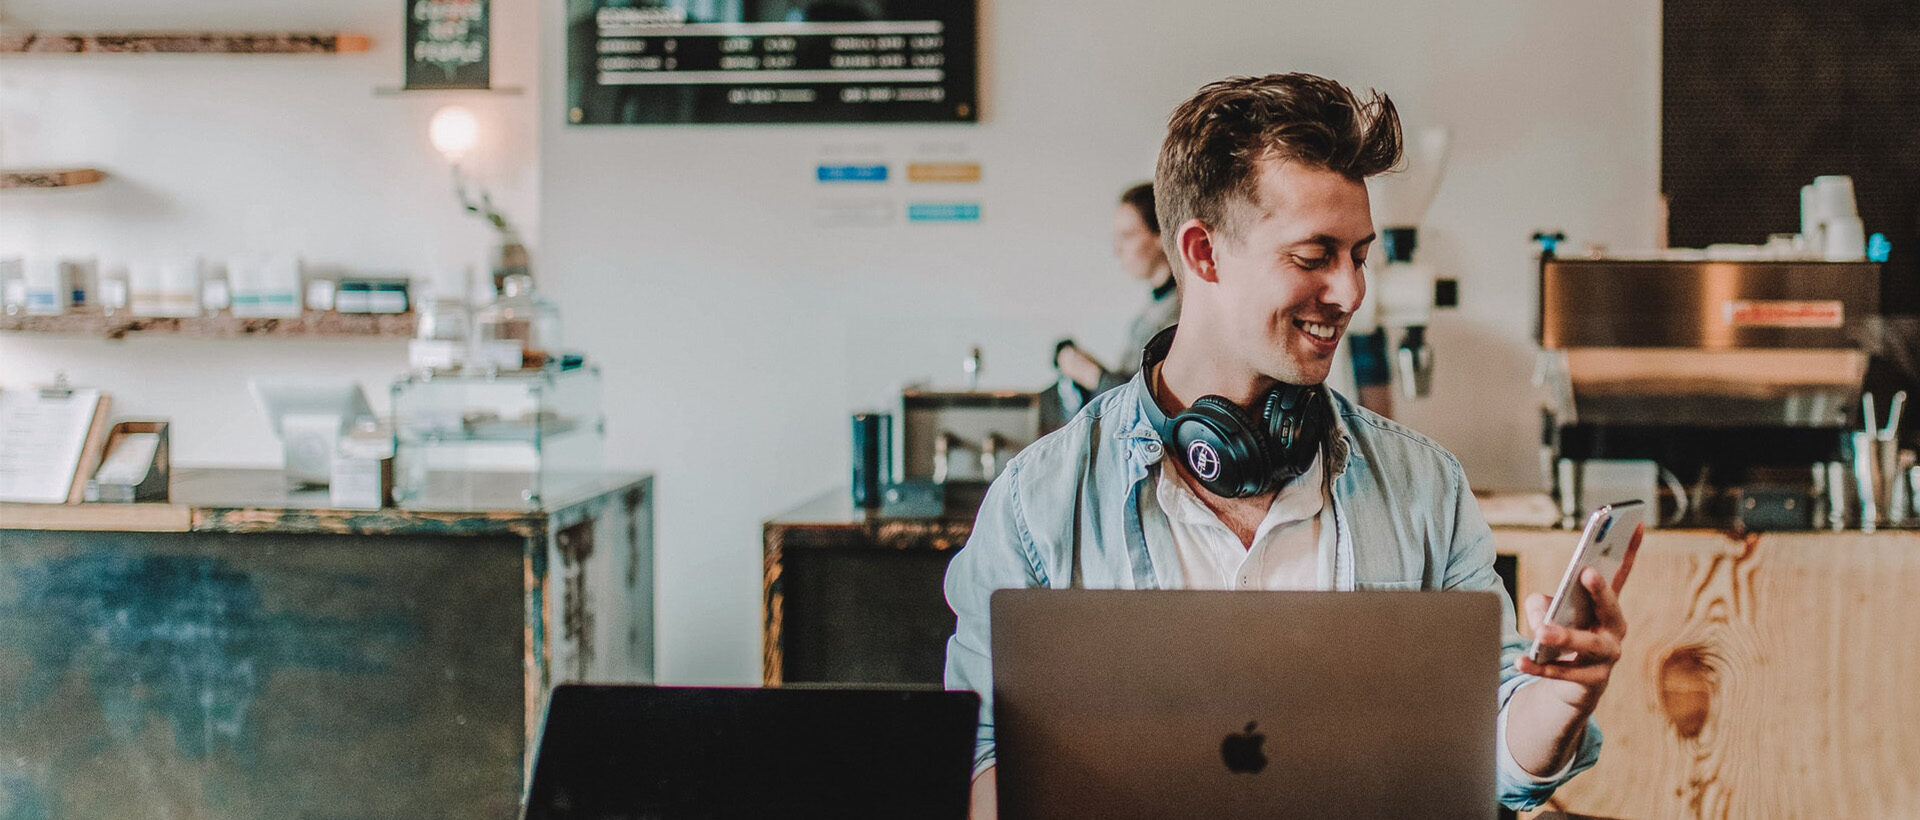 Lachender junger Mensch vor Computer in hippem Cafe